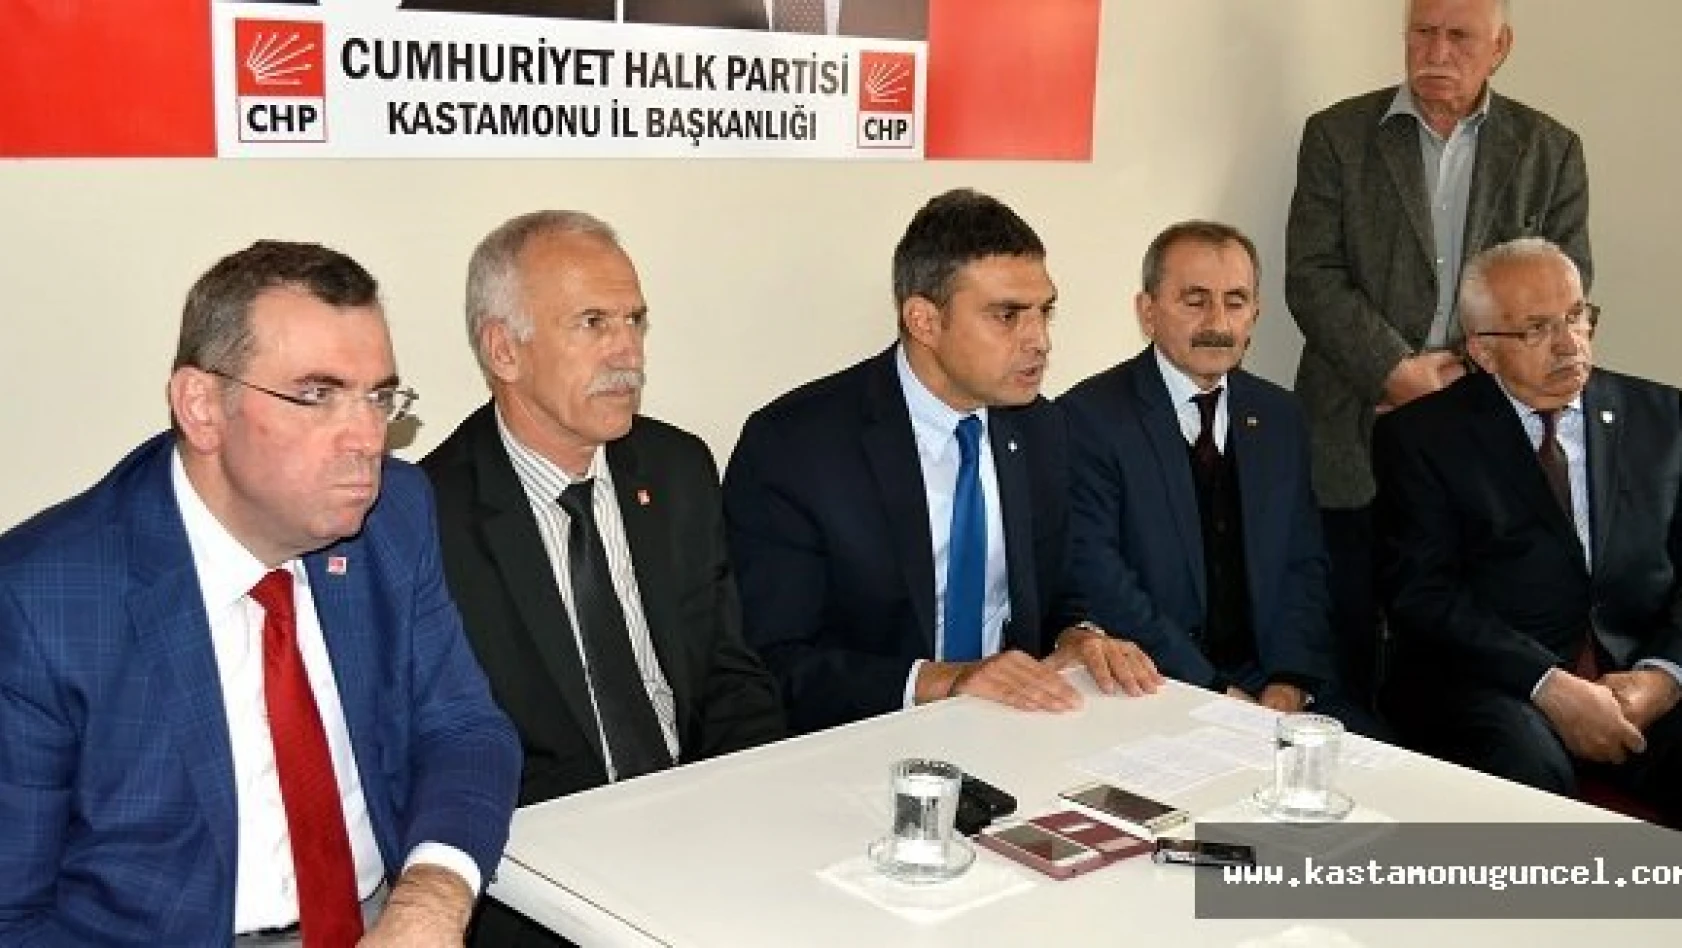 Çelebioğlu '1 Kasım'da Hükümeti, CHP Kuracaktır'